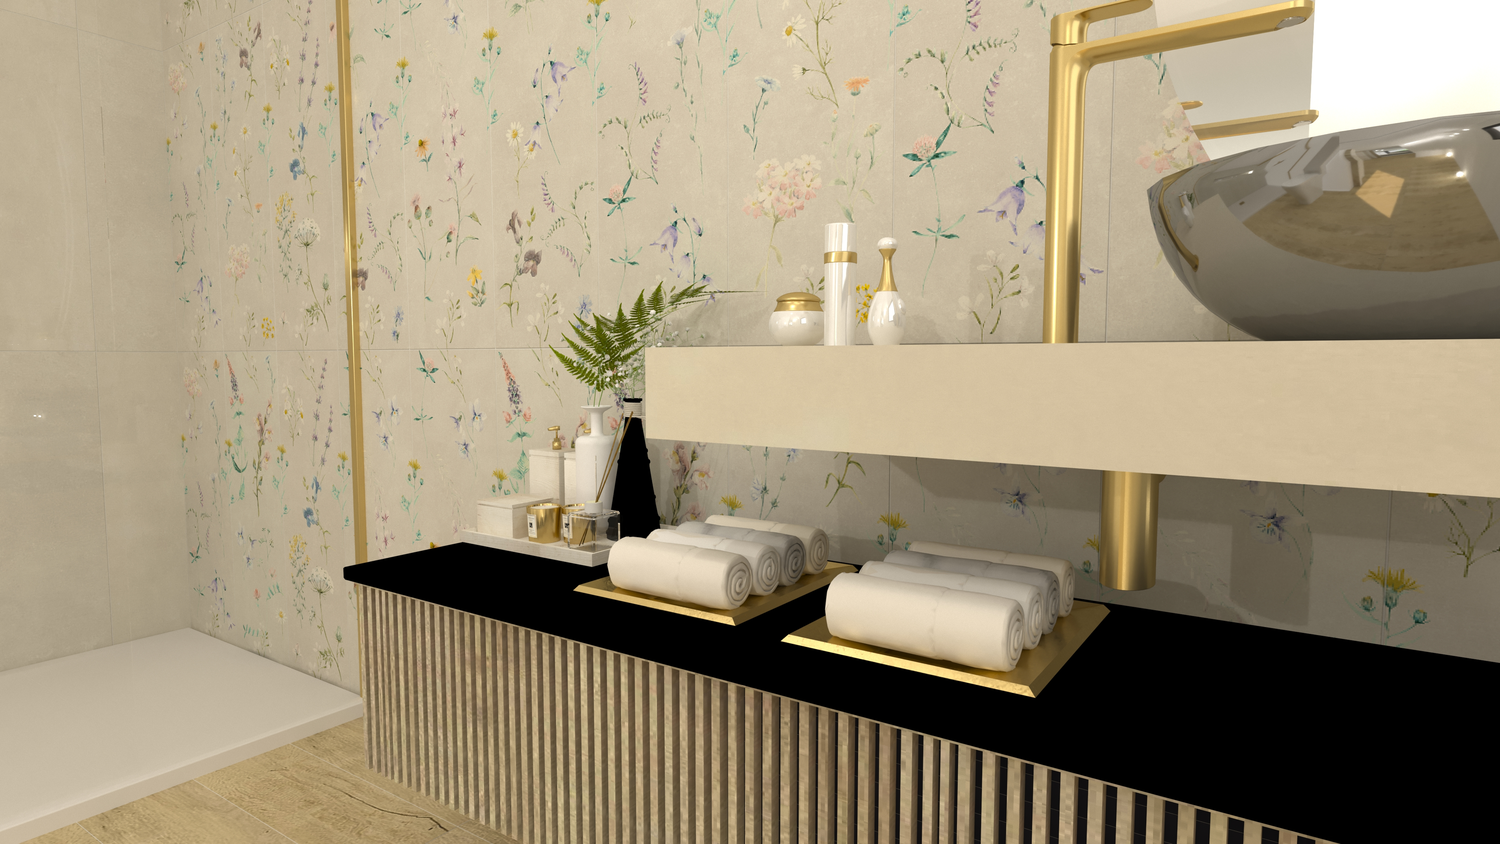 Asesoramiento y soluciones decorativas para tu reforma totalmente gratuitos con Dunas Mueble baño madera maciza